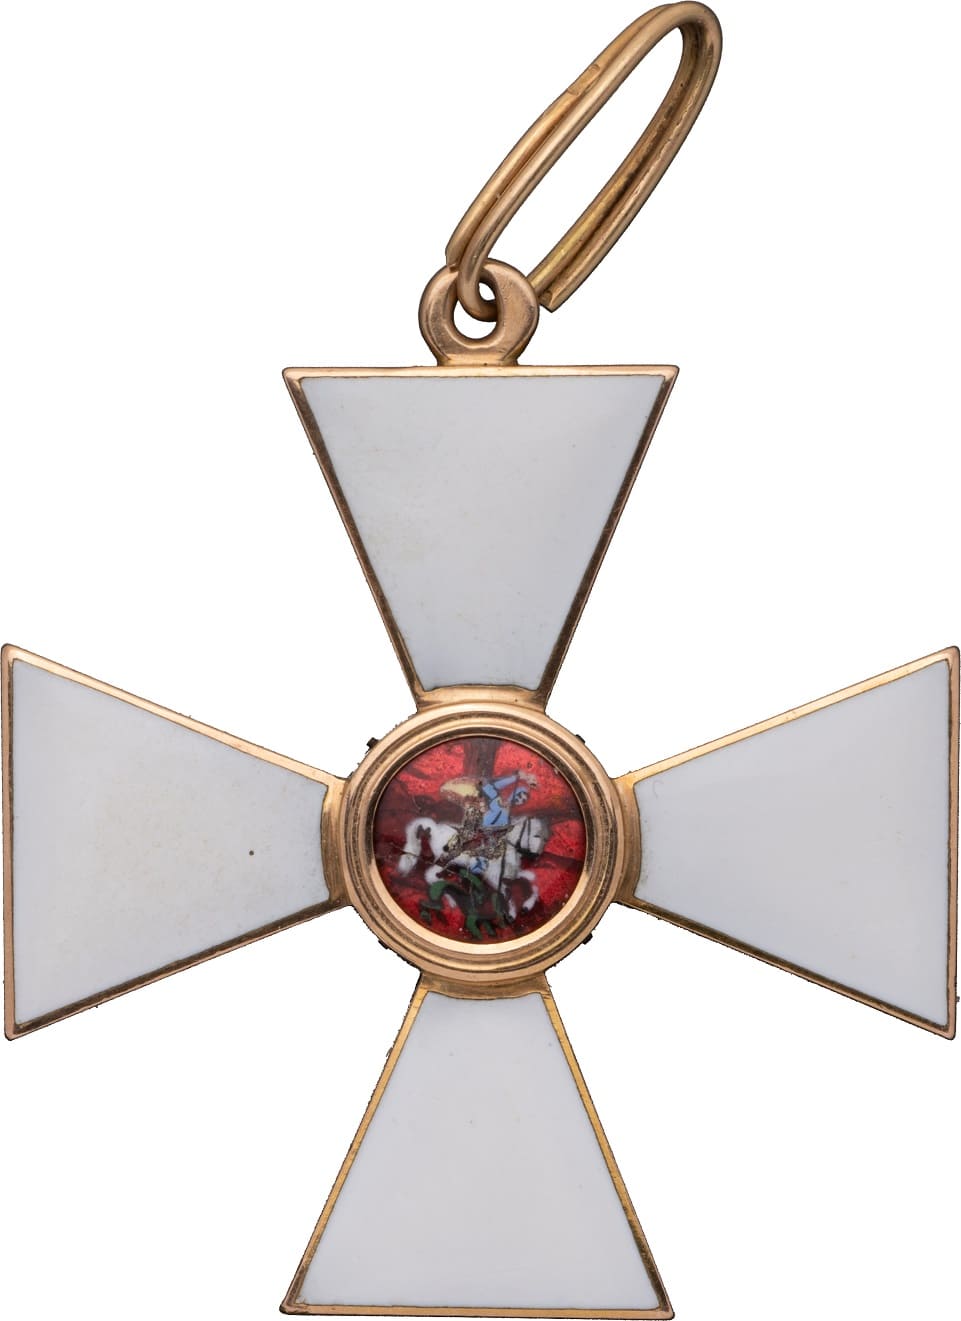 Орден Святого Георгия 3-й степени мастерской Юлиуса Кейбель.jpg